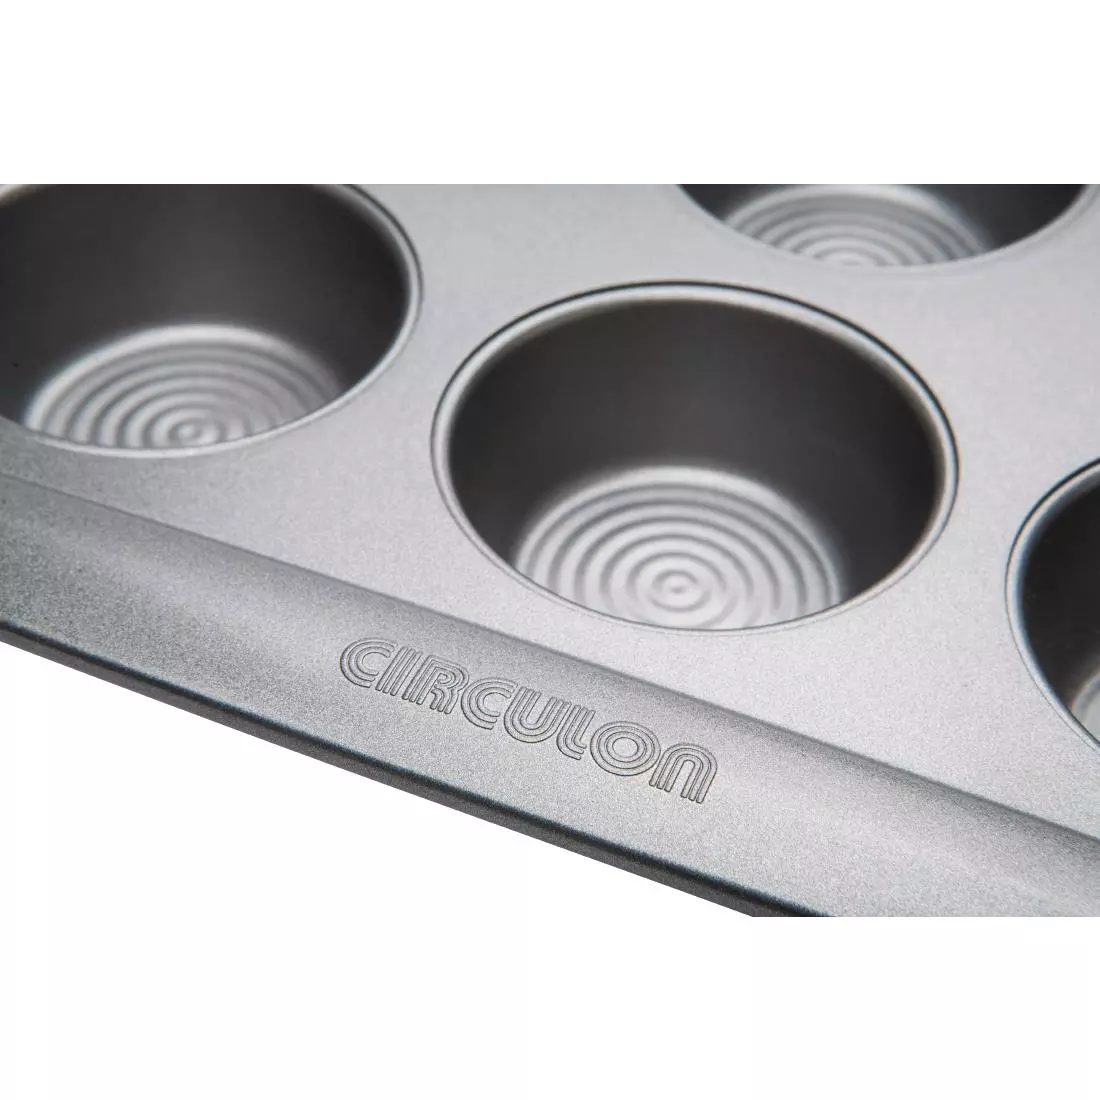 Een Circulon carbonstalen anti-kleef bakvorm voor 12 muffins 39,5 x 28cm koop je bij ShopXPress